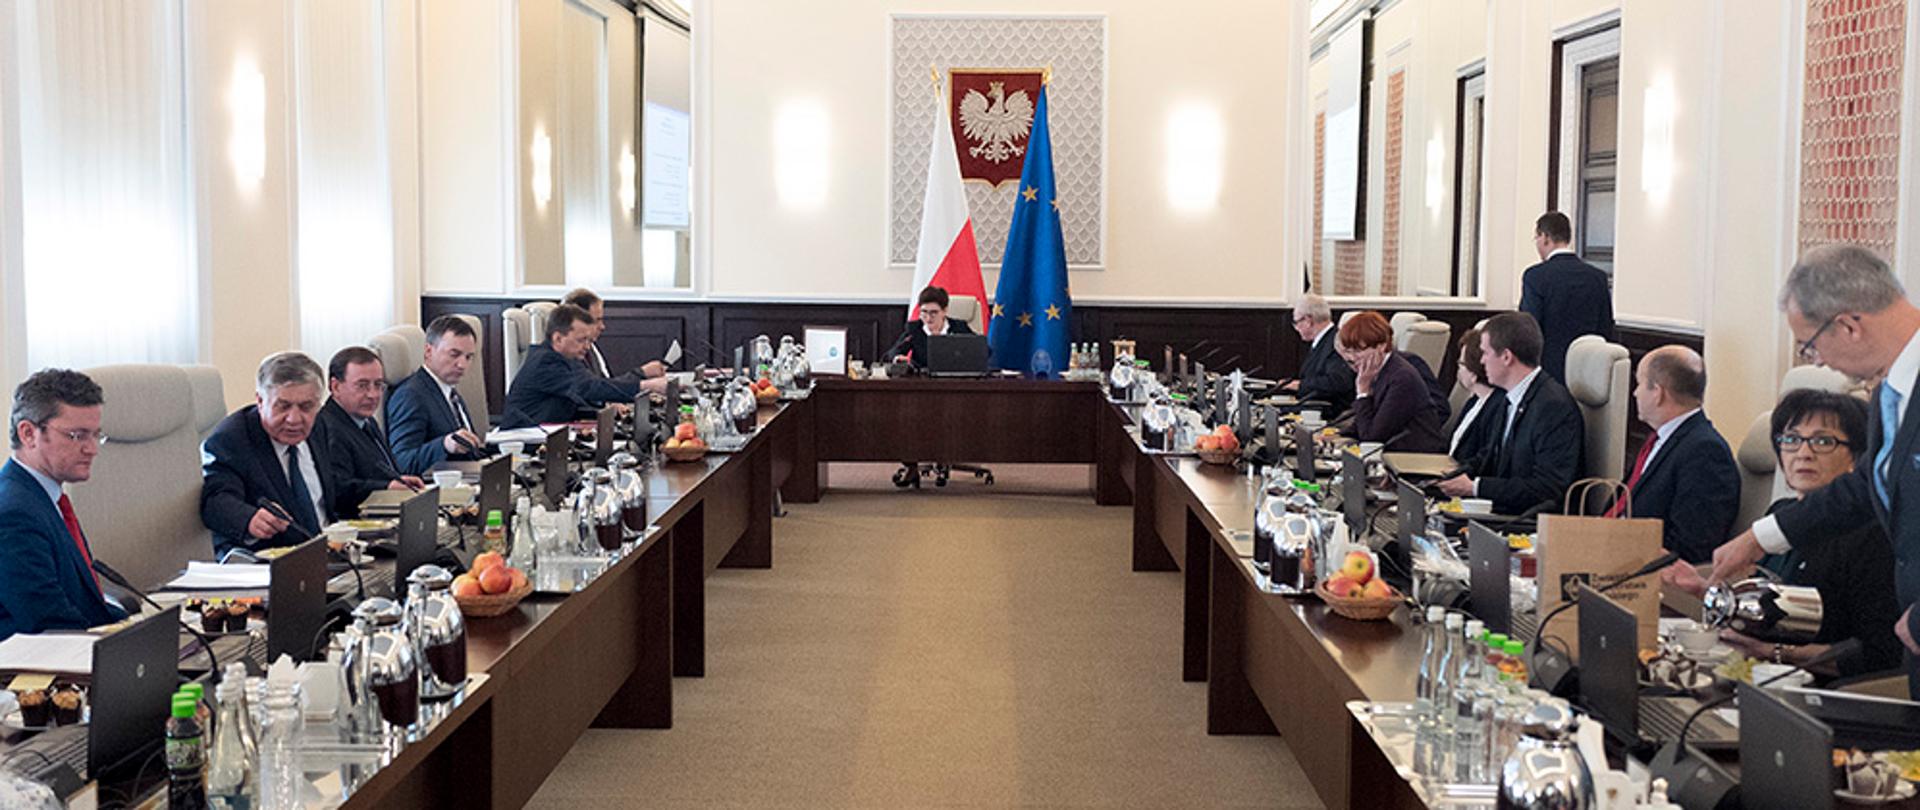 Na zdjęciu znajdują się uczestnicy posiedzenia Rady Ministrów